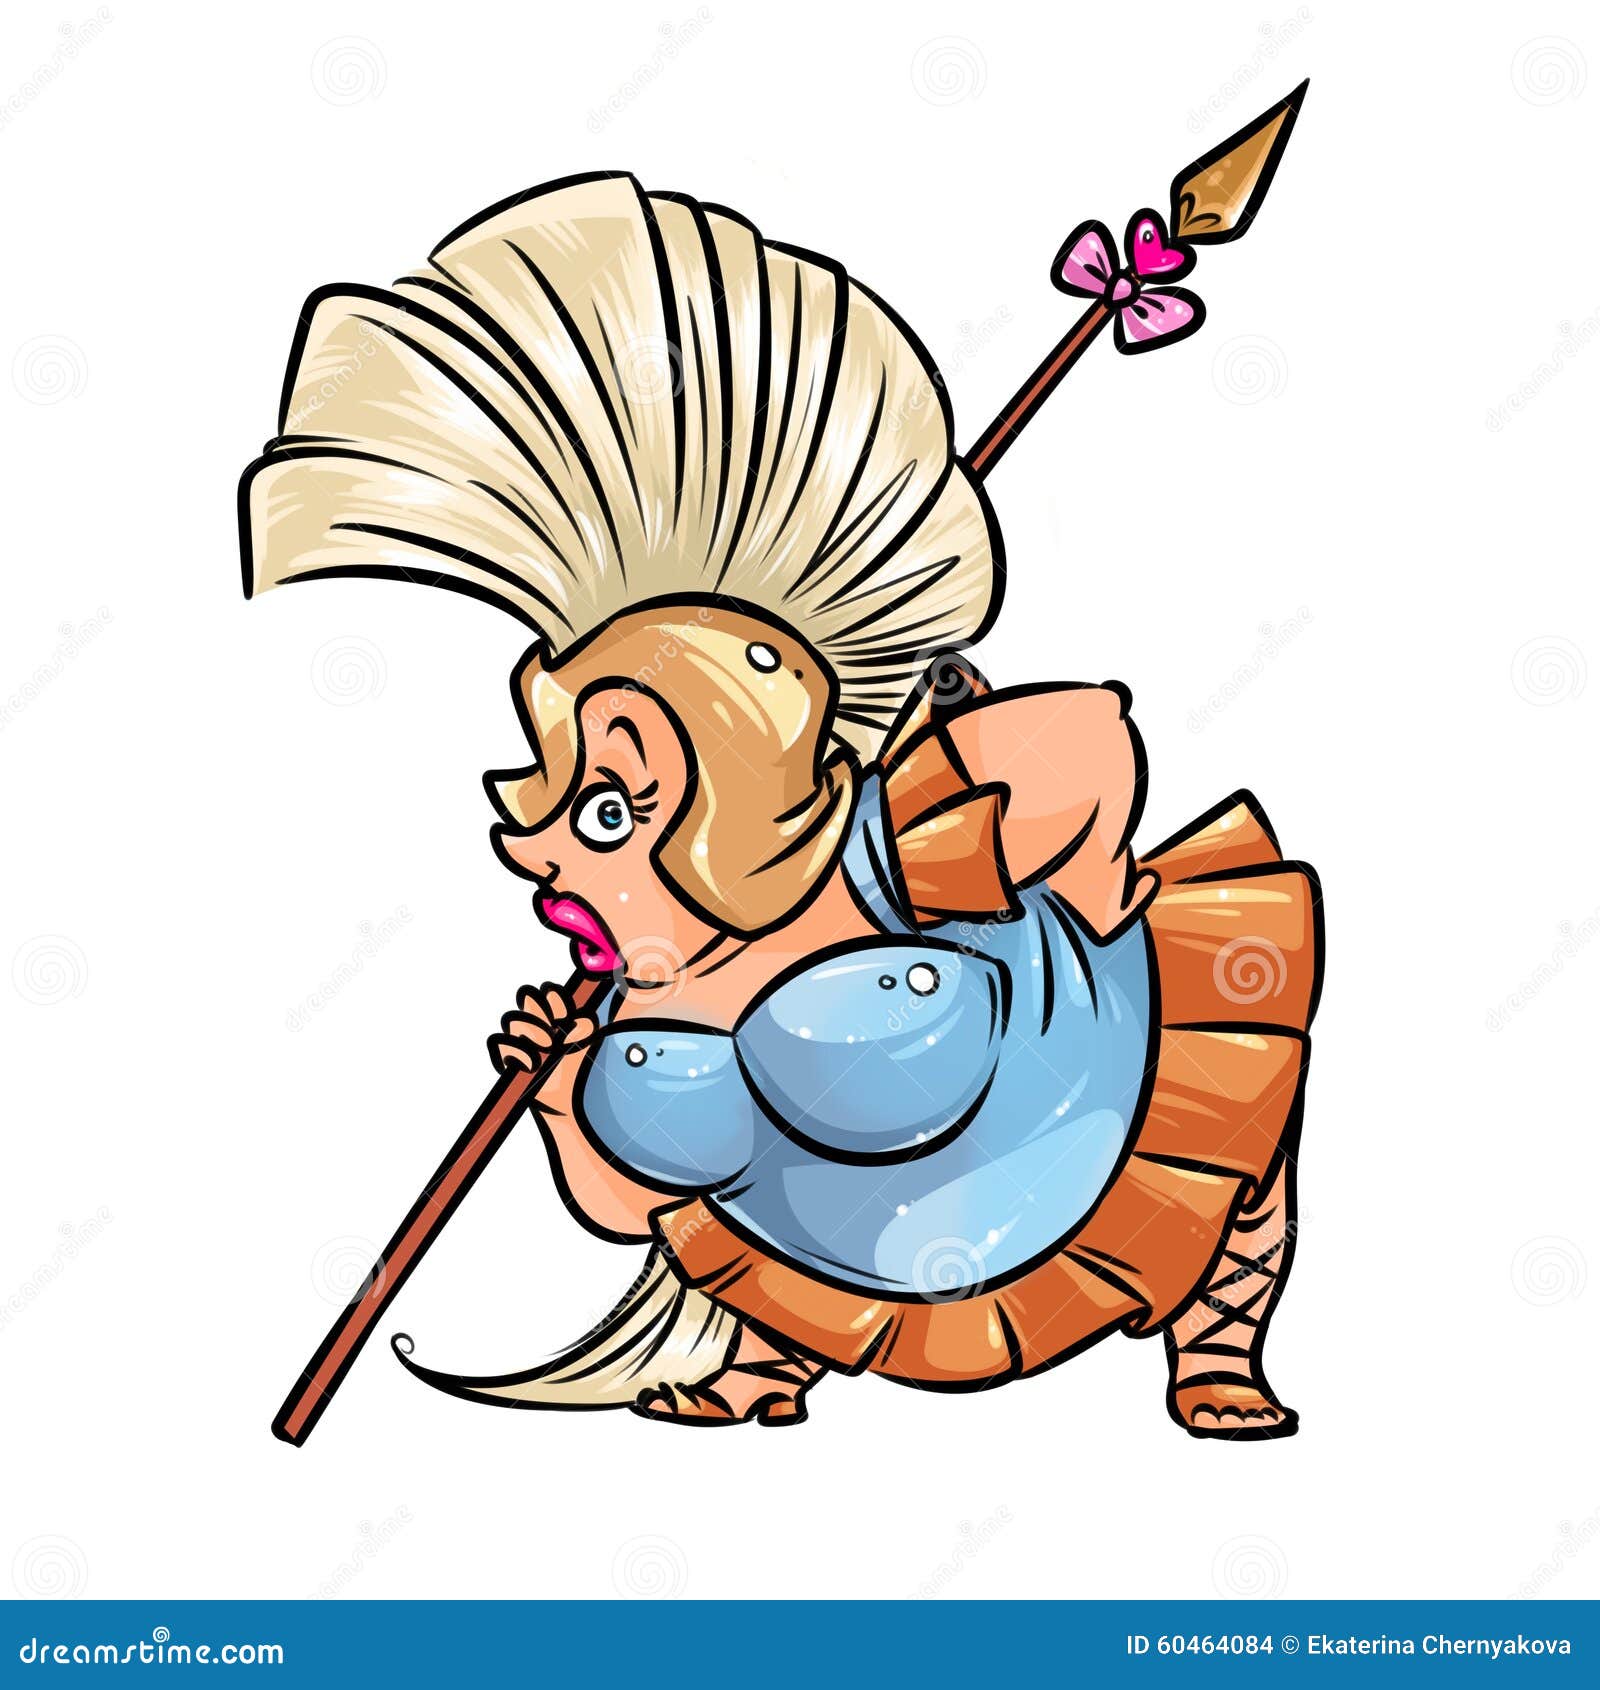 Amazon Woman Warrior Cartoon Illustration Stock Illustration - Image